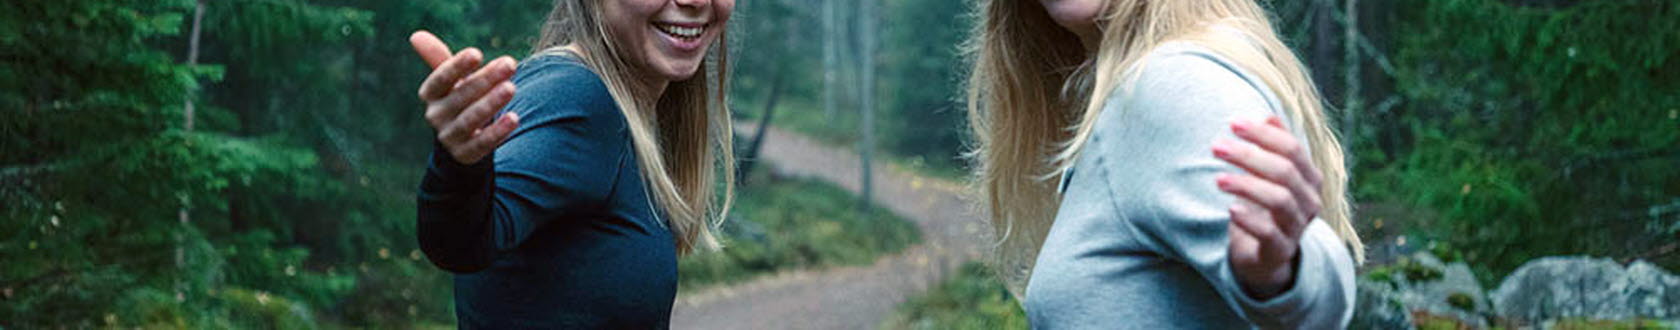 Två unga kvinnor på skogspromenad